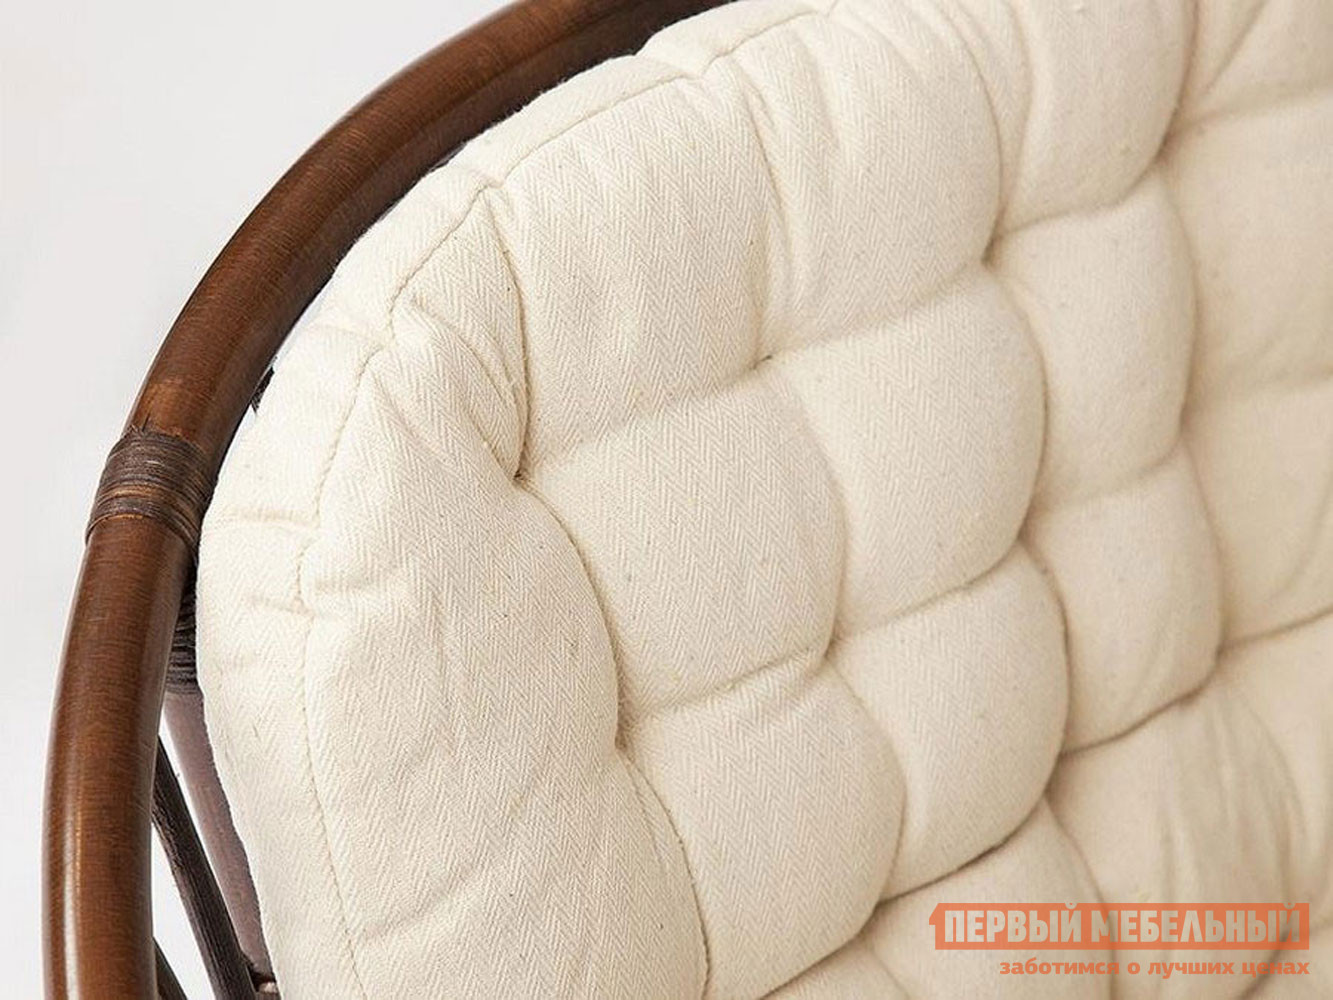 Комплект плетеной мебели  Туркей Грецкий орех, ротанг / Бежевый, ткань от Первый Мебельный